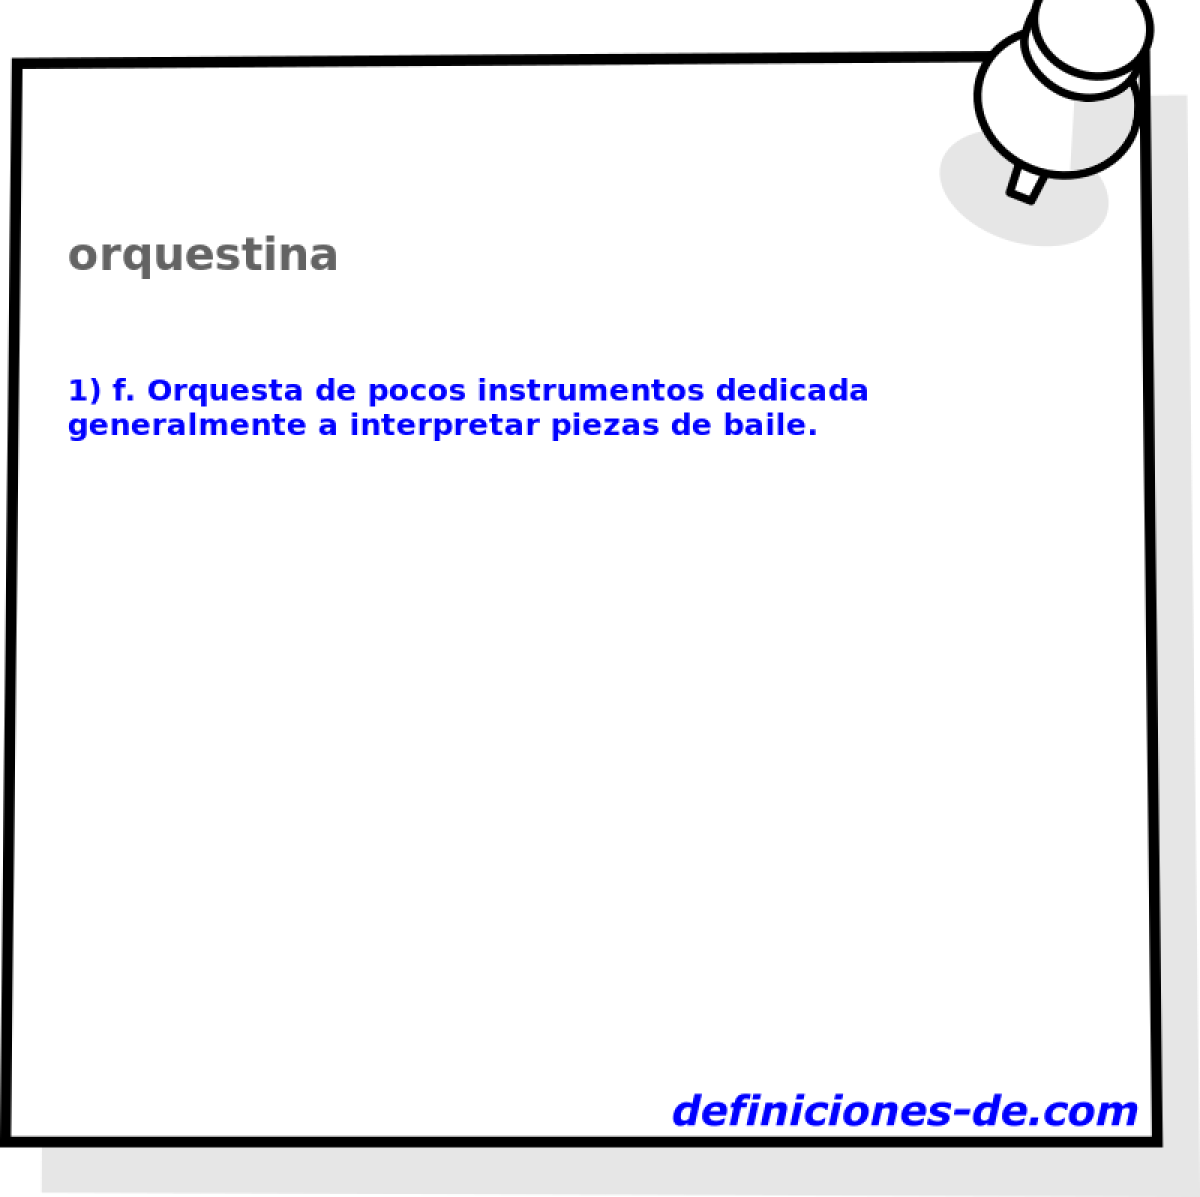 orquestina 